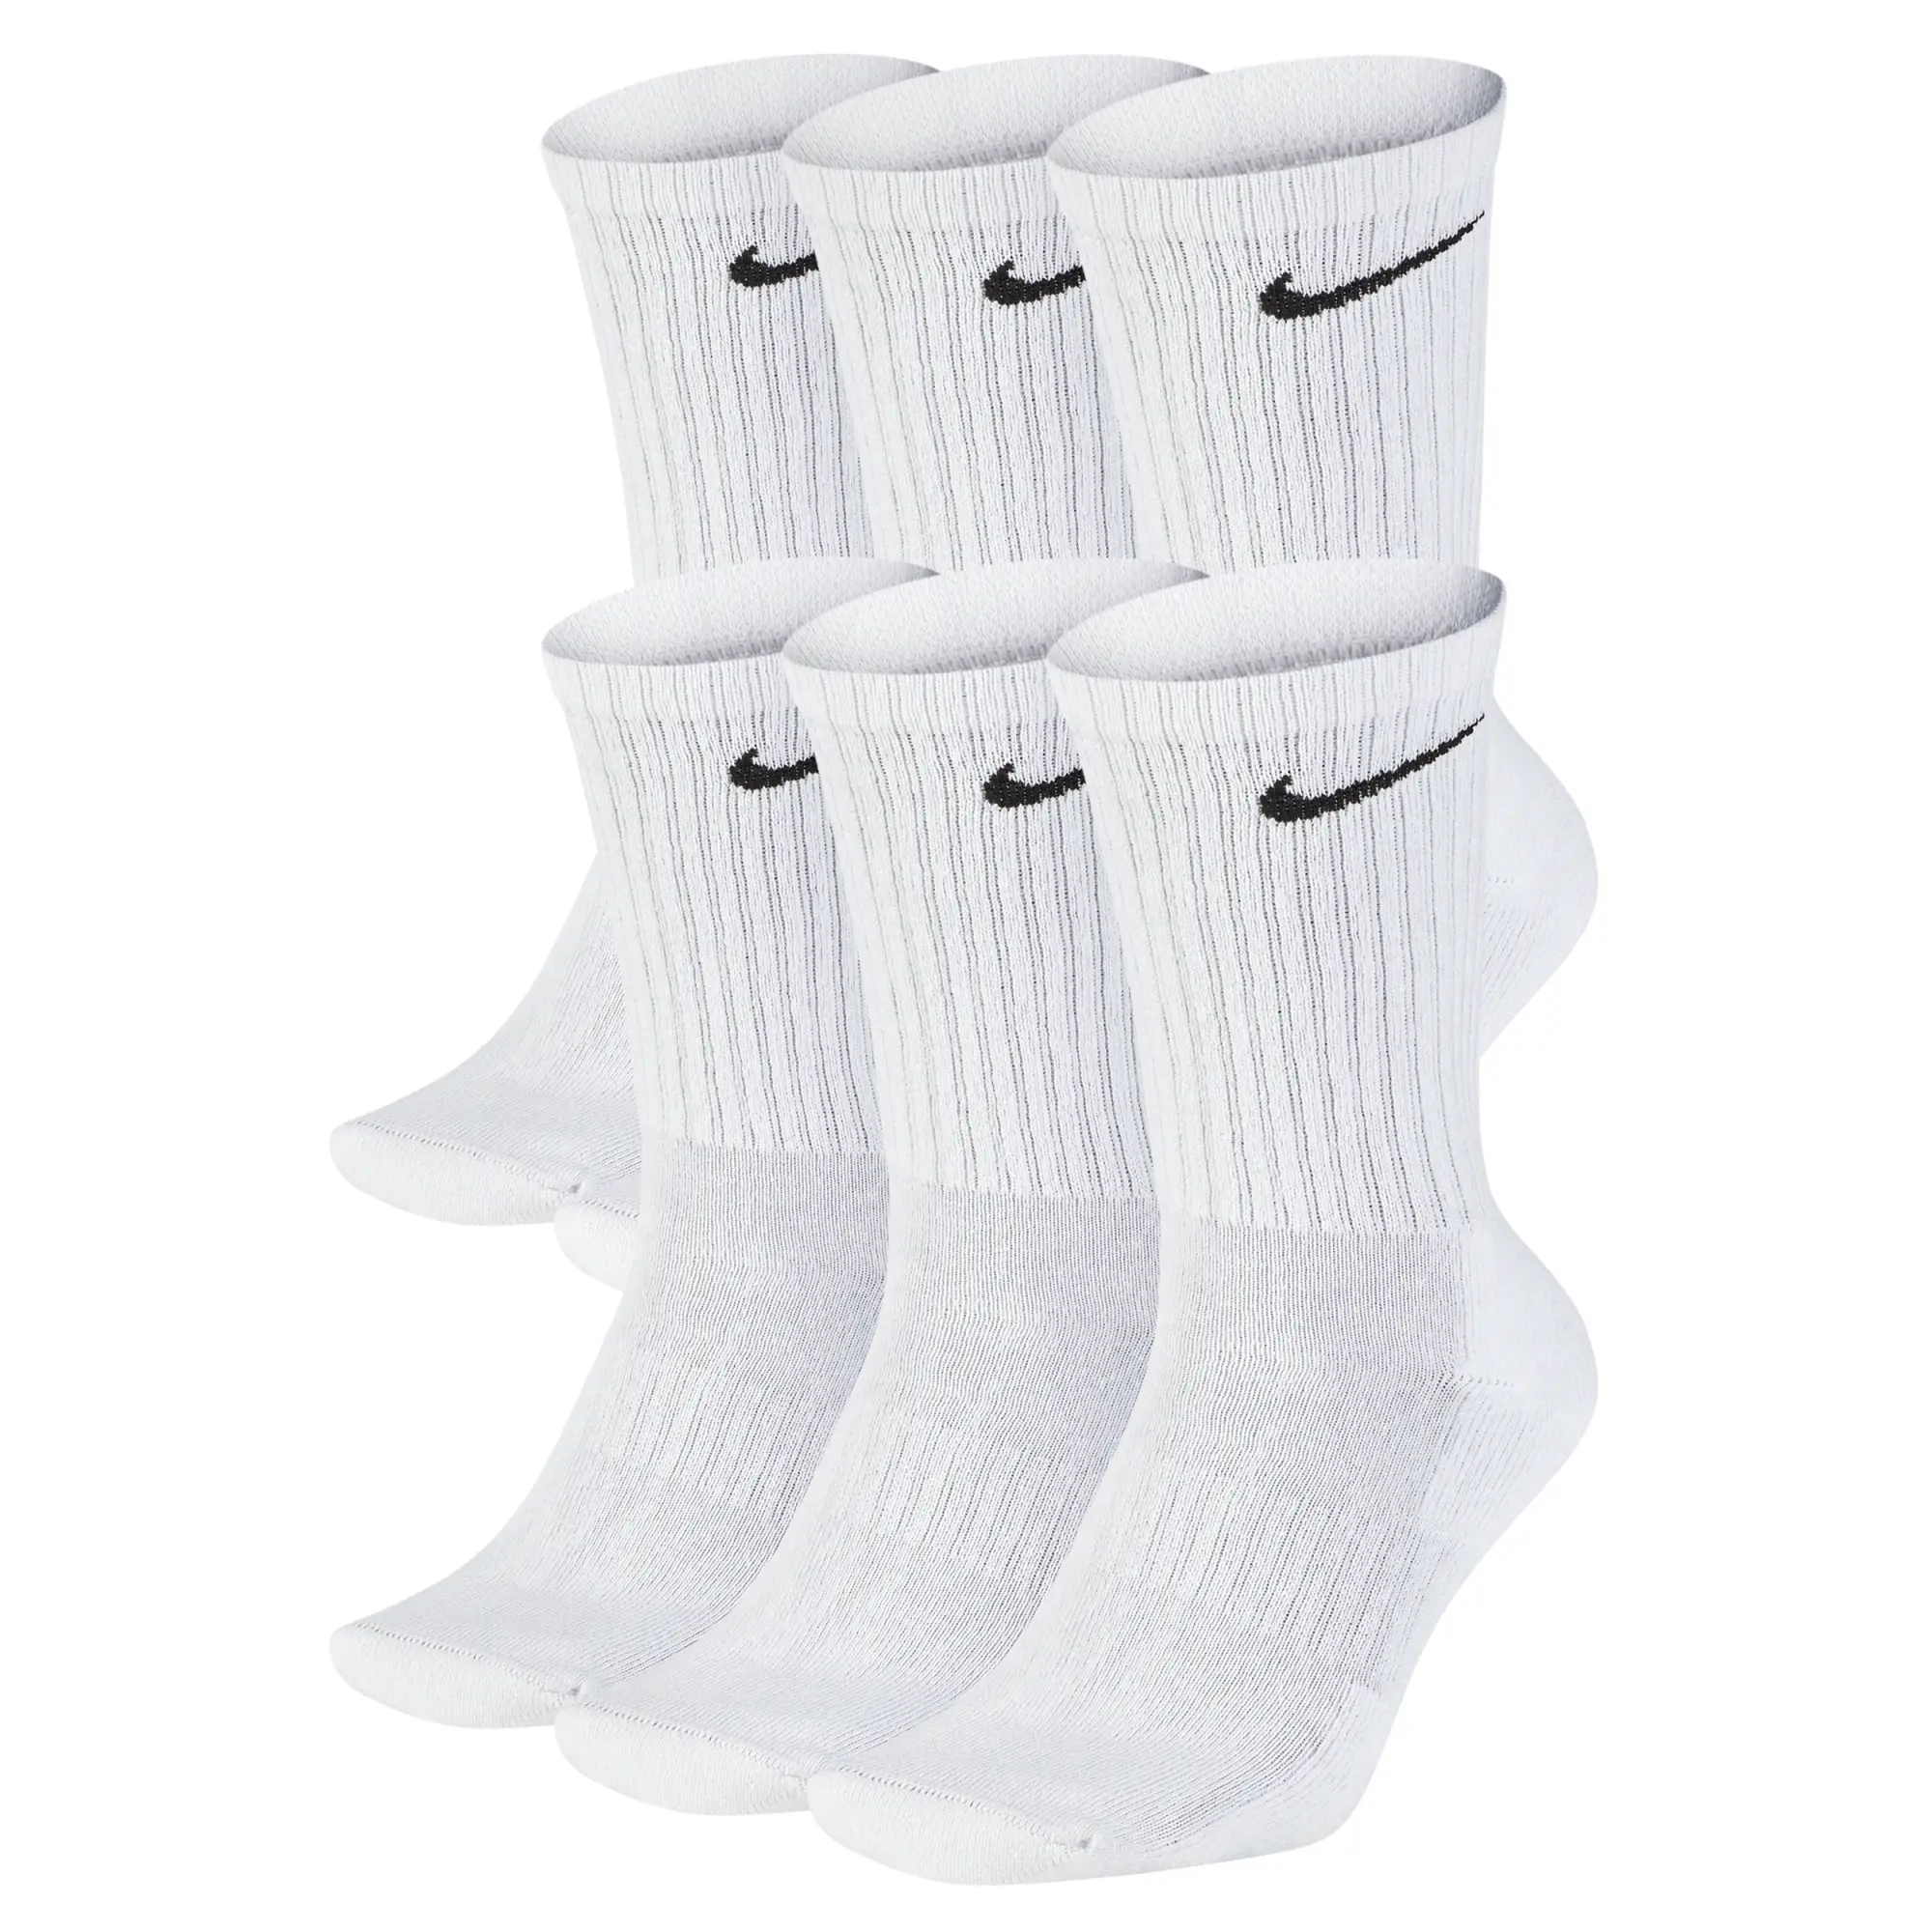 Nike 6 Pack of Training Crew Socks - White